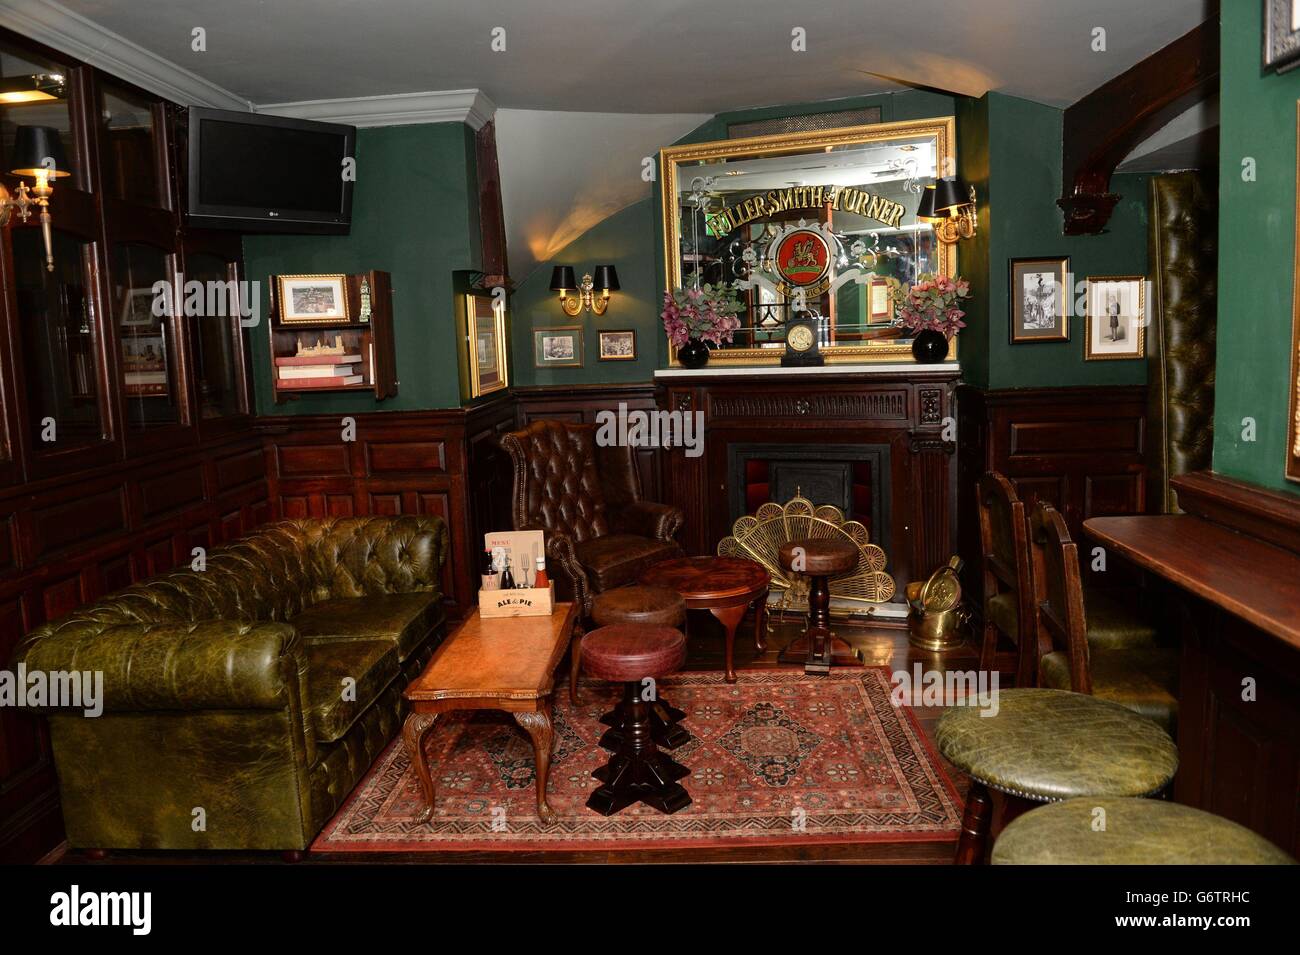 Una vista dell'interno del pub Red Lion a Whitehall, Londra, che dovrebbe essere riaperto più tardi oggi dal Cancelliere dello scacchiere George Osborne, a seguito del suo rinnovo. Foto Stock